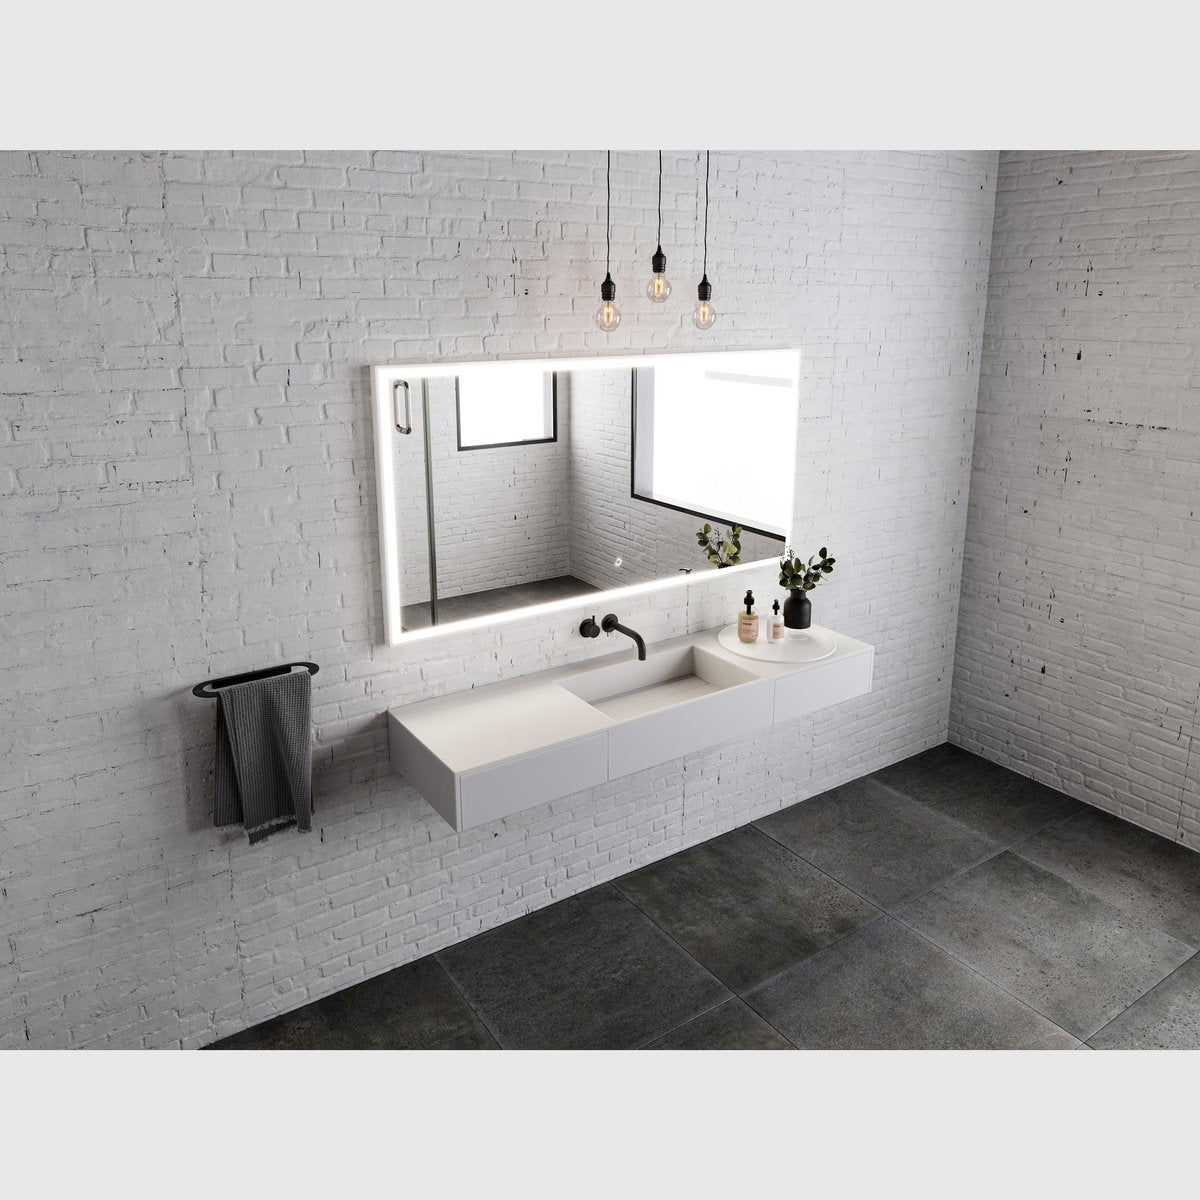 Se Copenhagen Bath Enkøping 140 håndvask - mat hvid hos Bad&Design